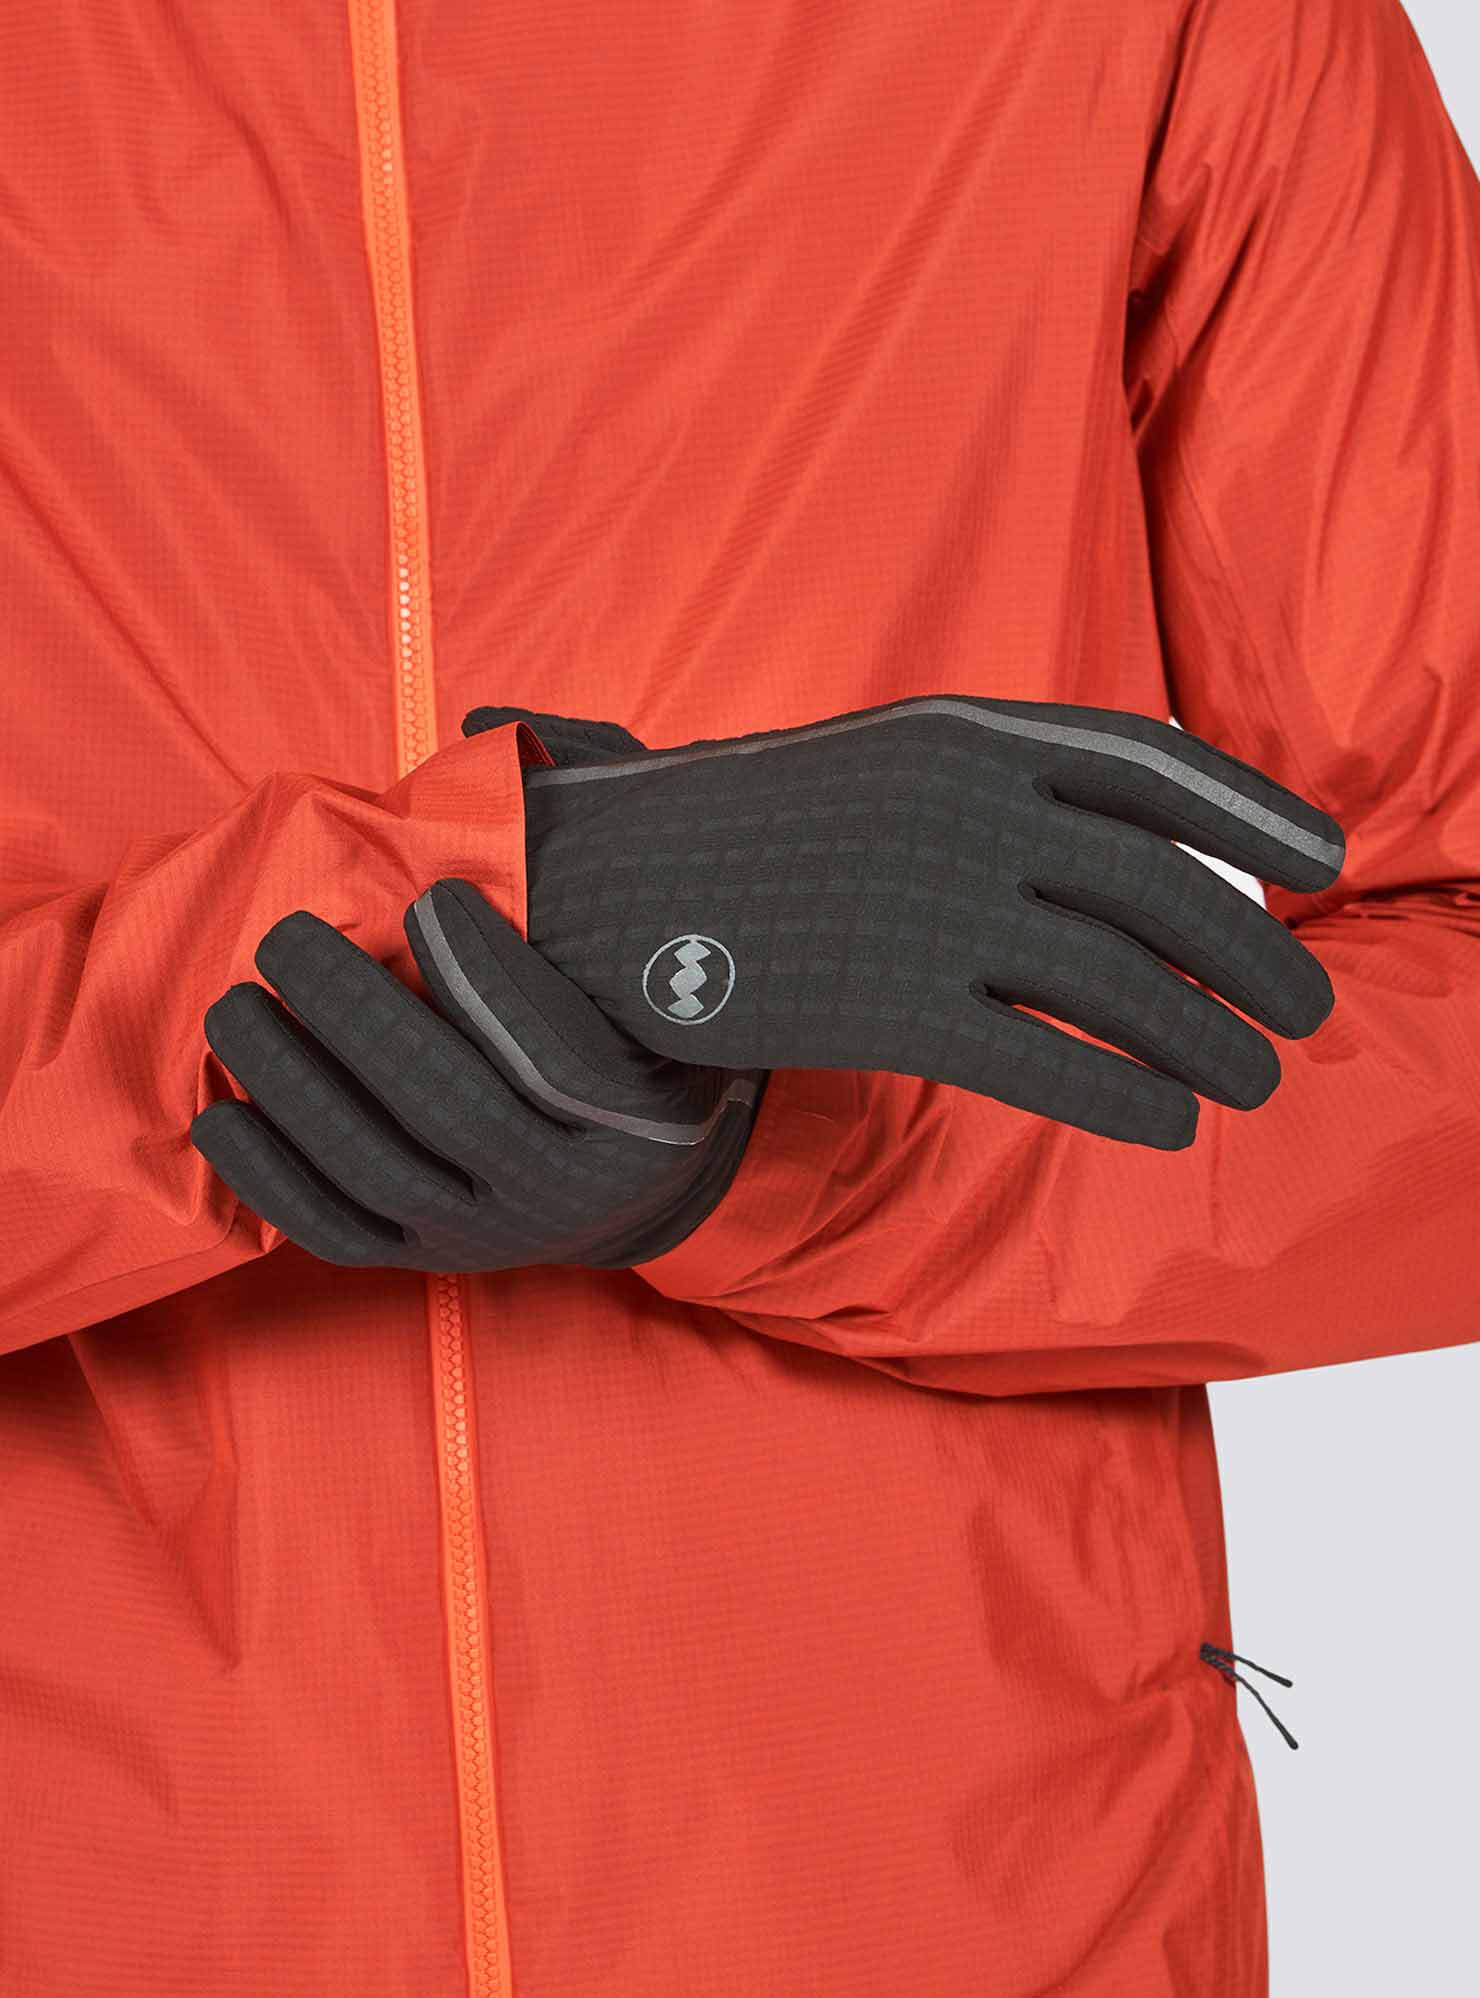 Stormrunner Light Gloves